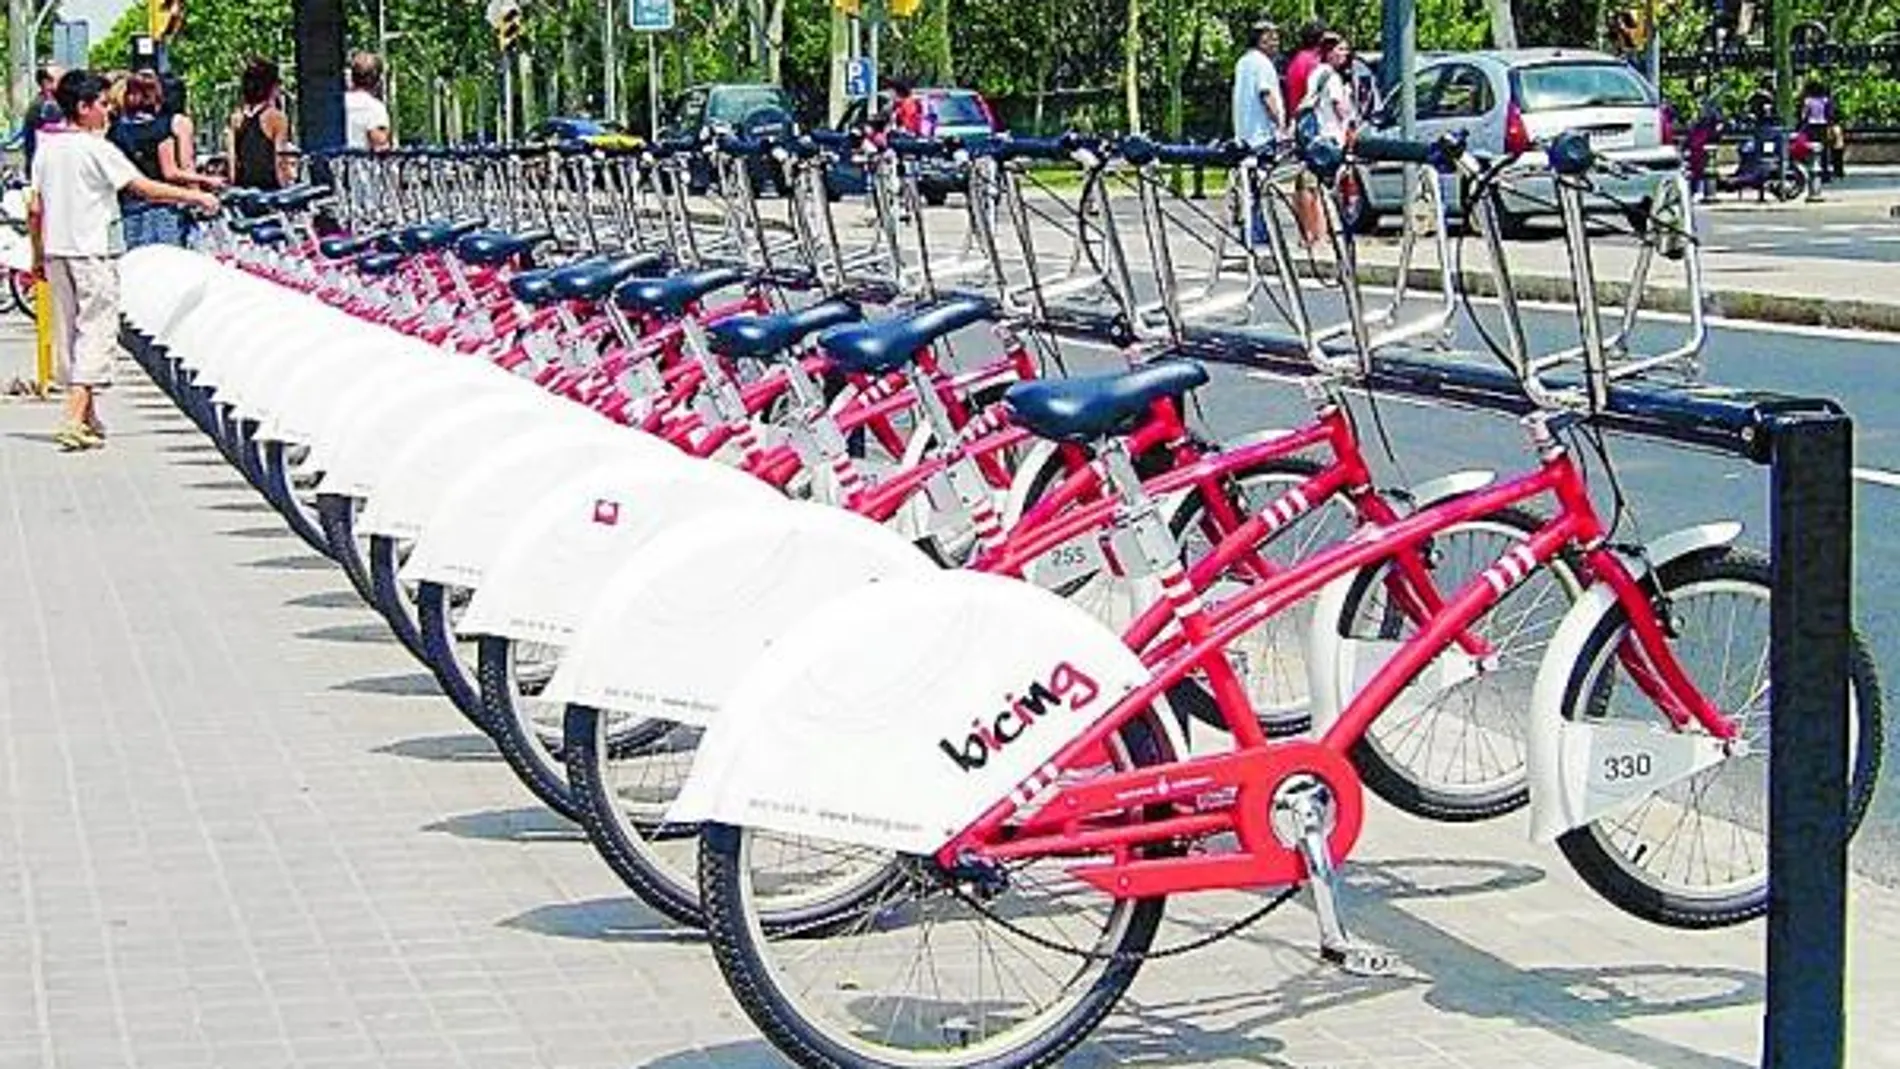 Reponer las bicicletas robadas del bicing en 2009 costó 3,3 millones